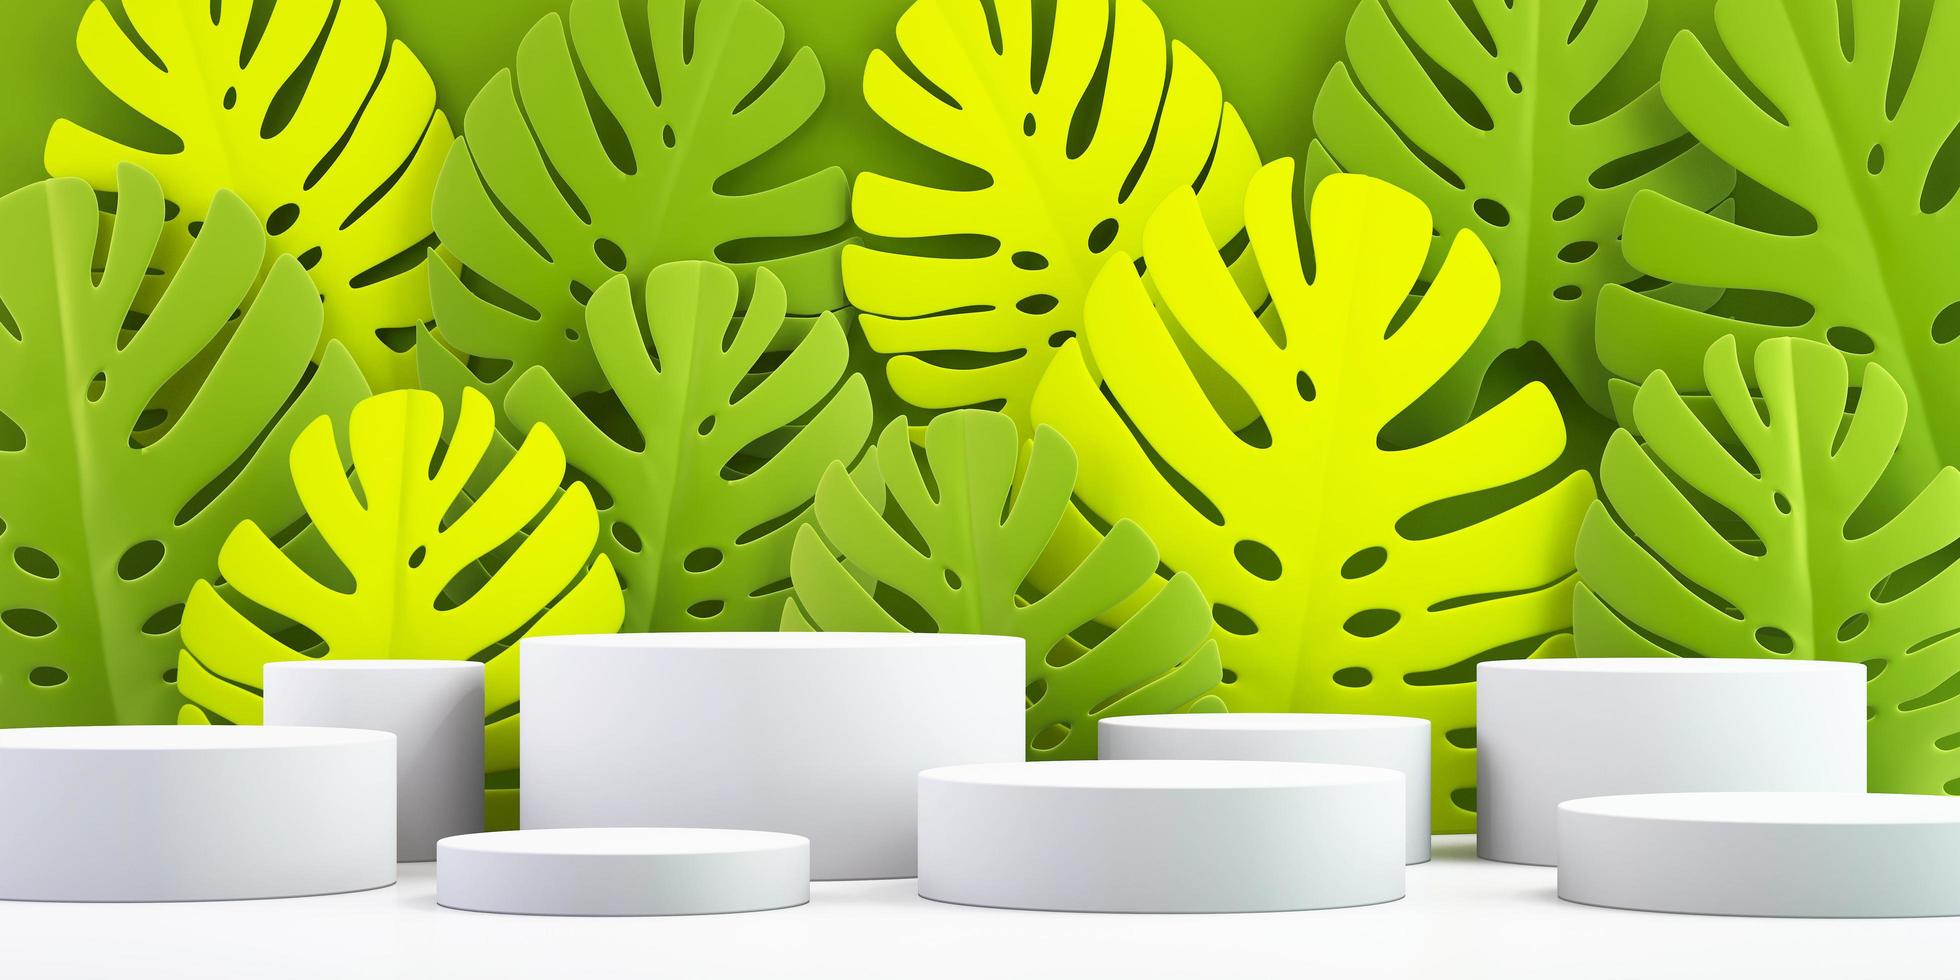 Fondo 3d para maqueta de podio para presentación de producto, fondo de hojas verdes, renderizado 3d foto